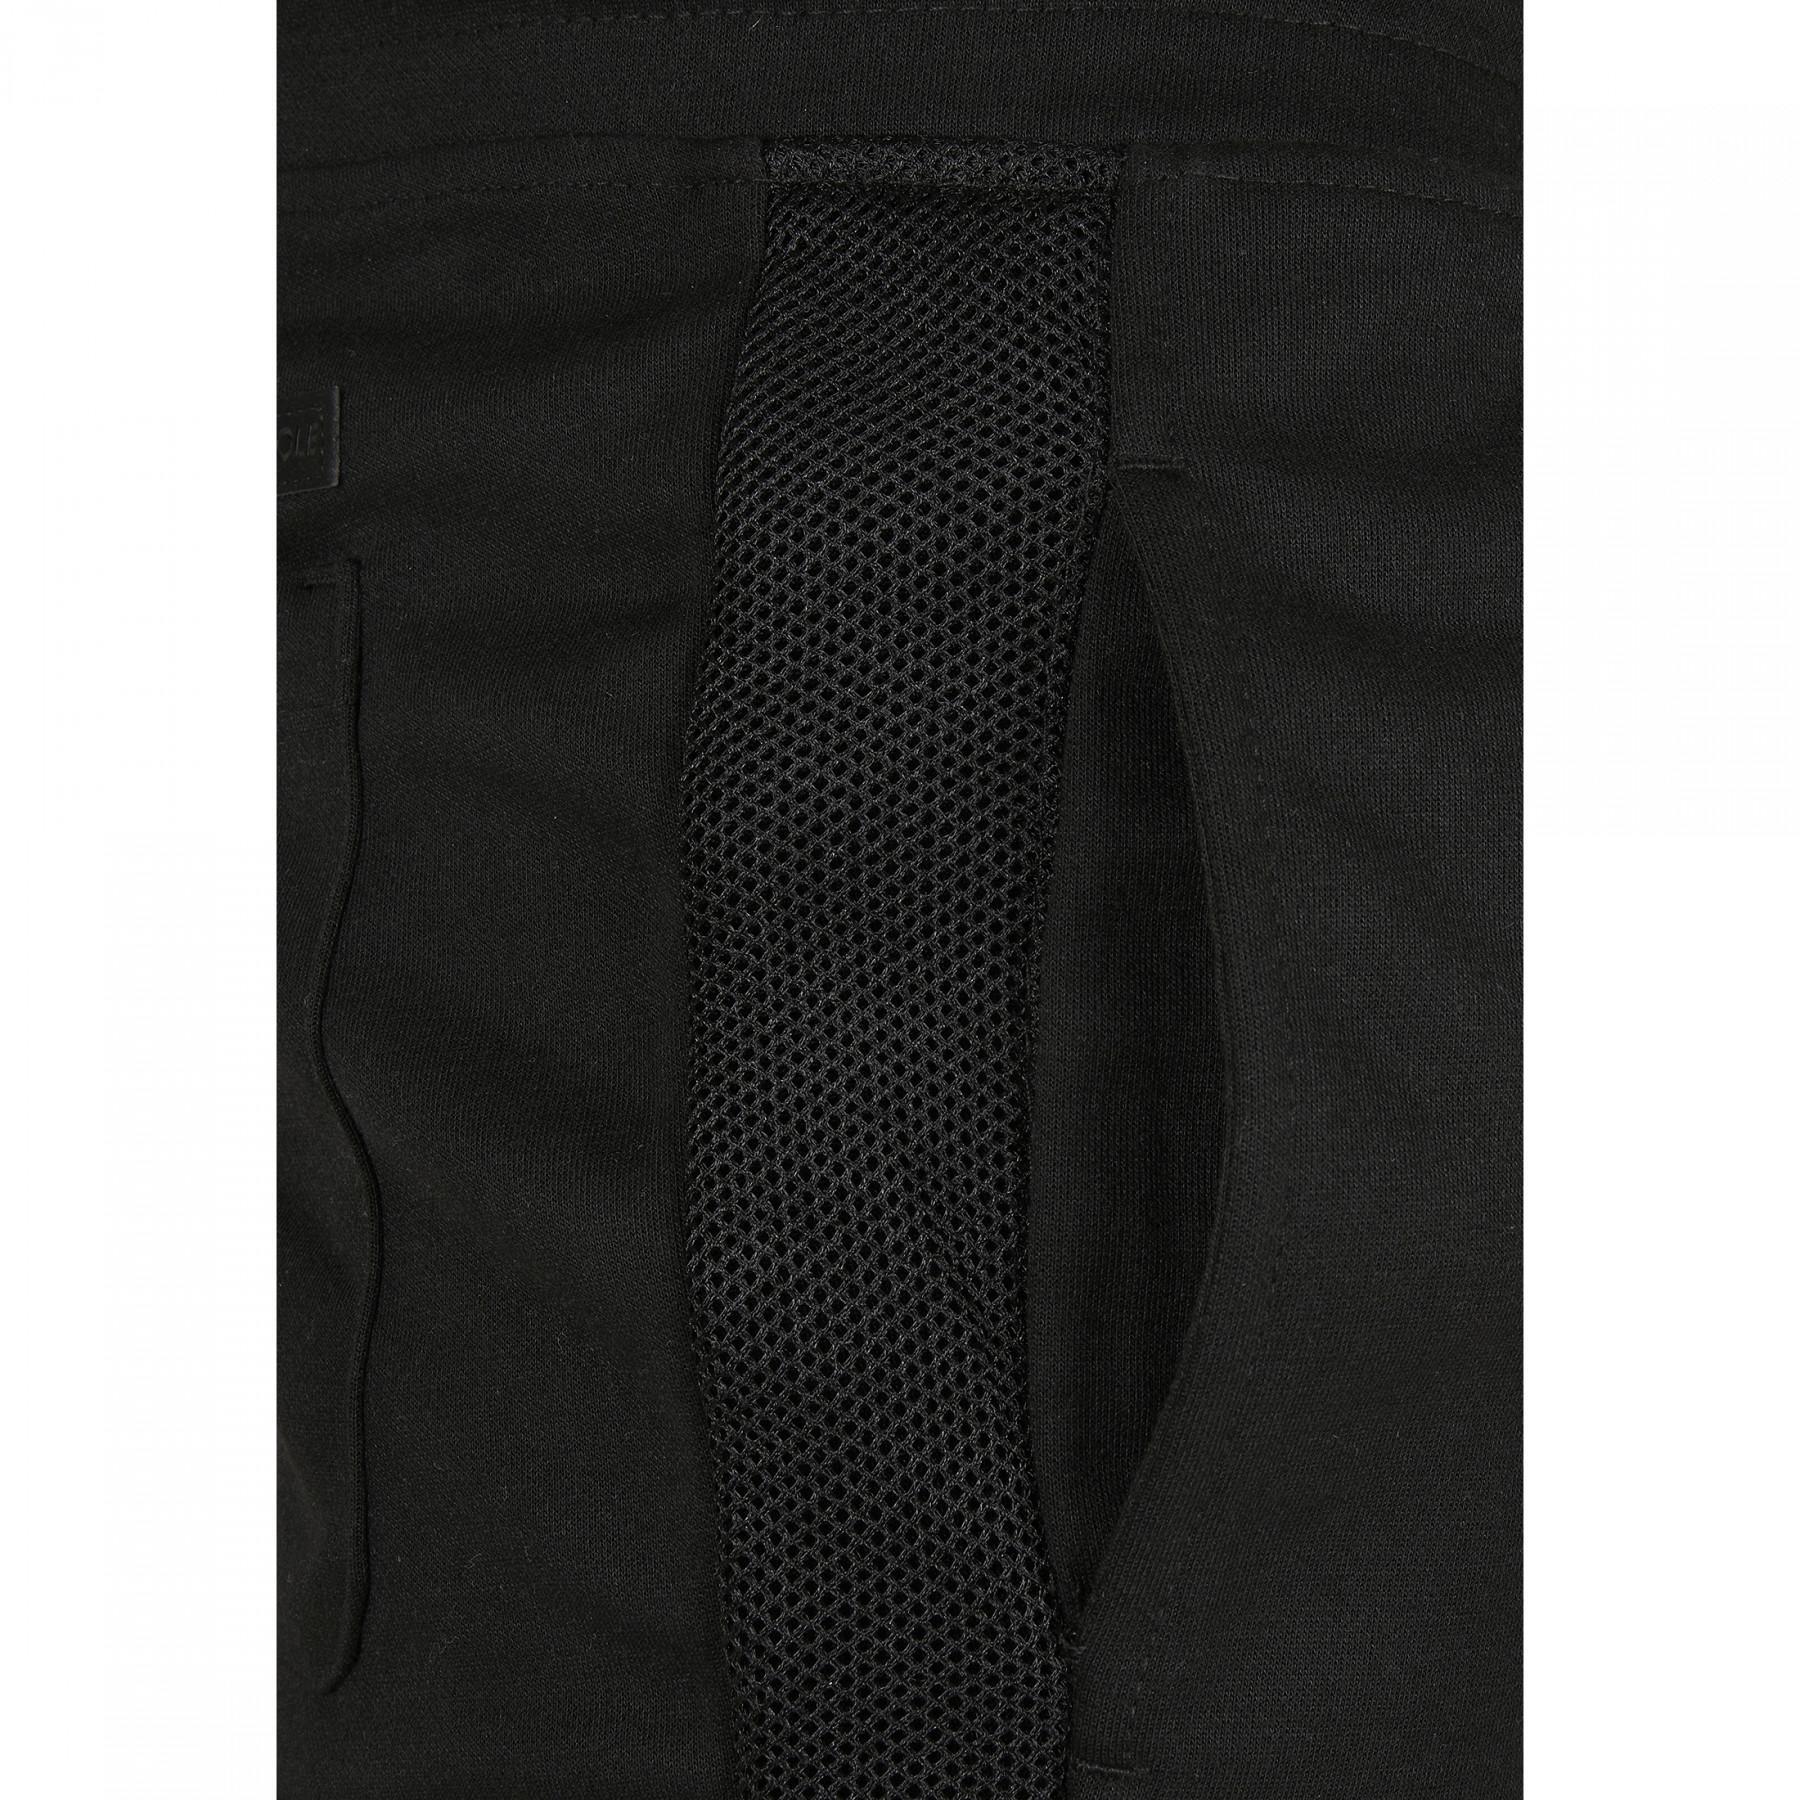 Pantalon de survêtement Southpole Color Block Tech Fleece